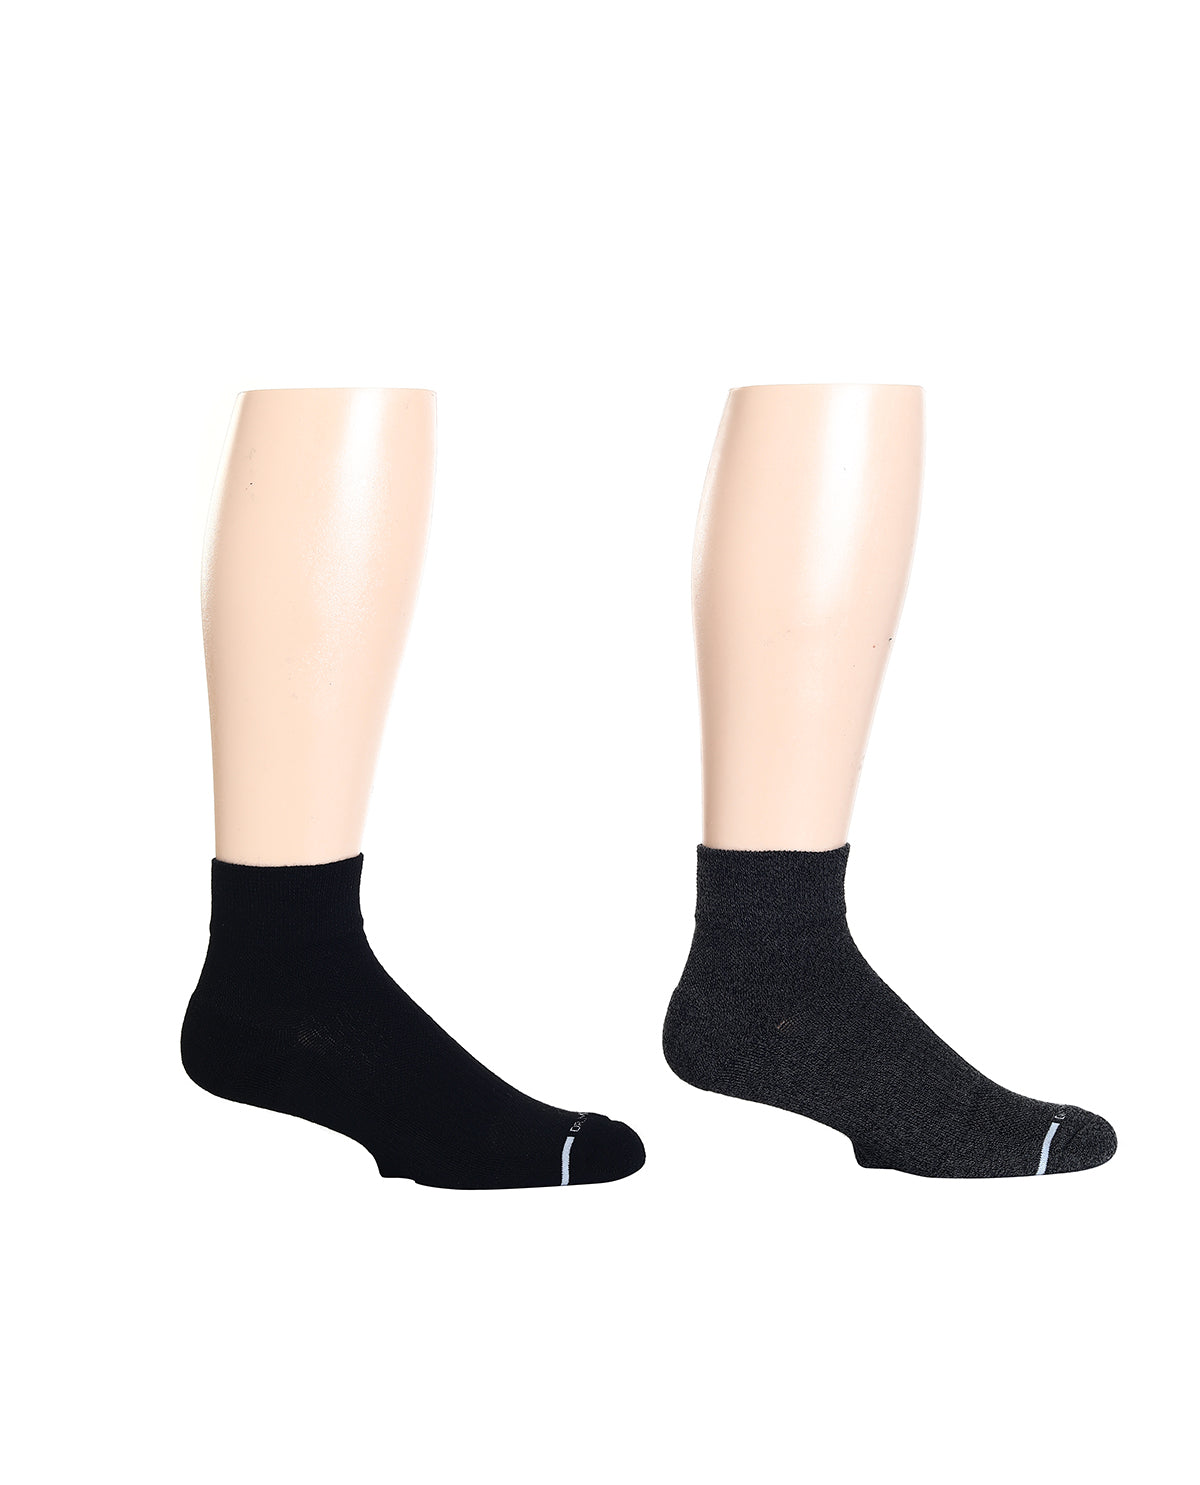 Dr. Motion Men's Solid Quarter Compression Socks - Two Pack